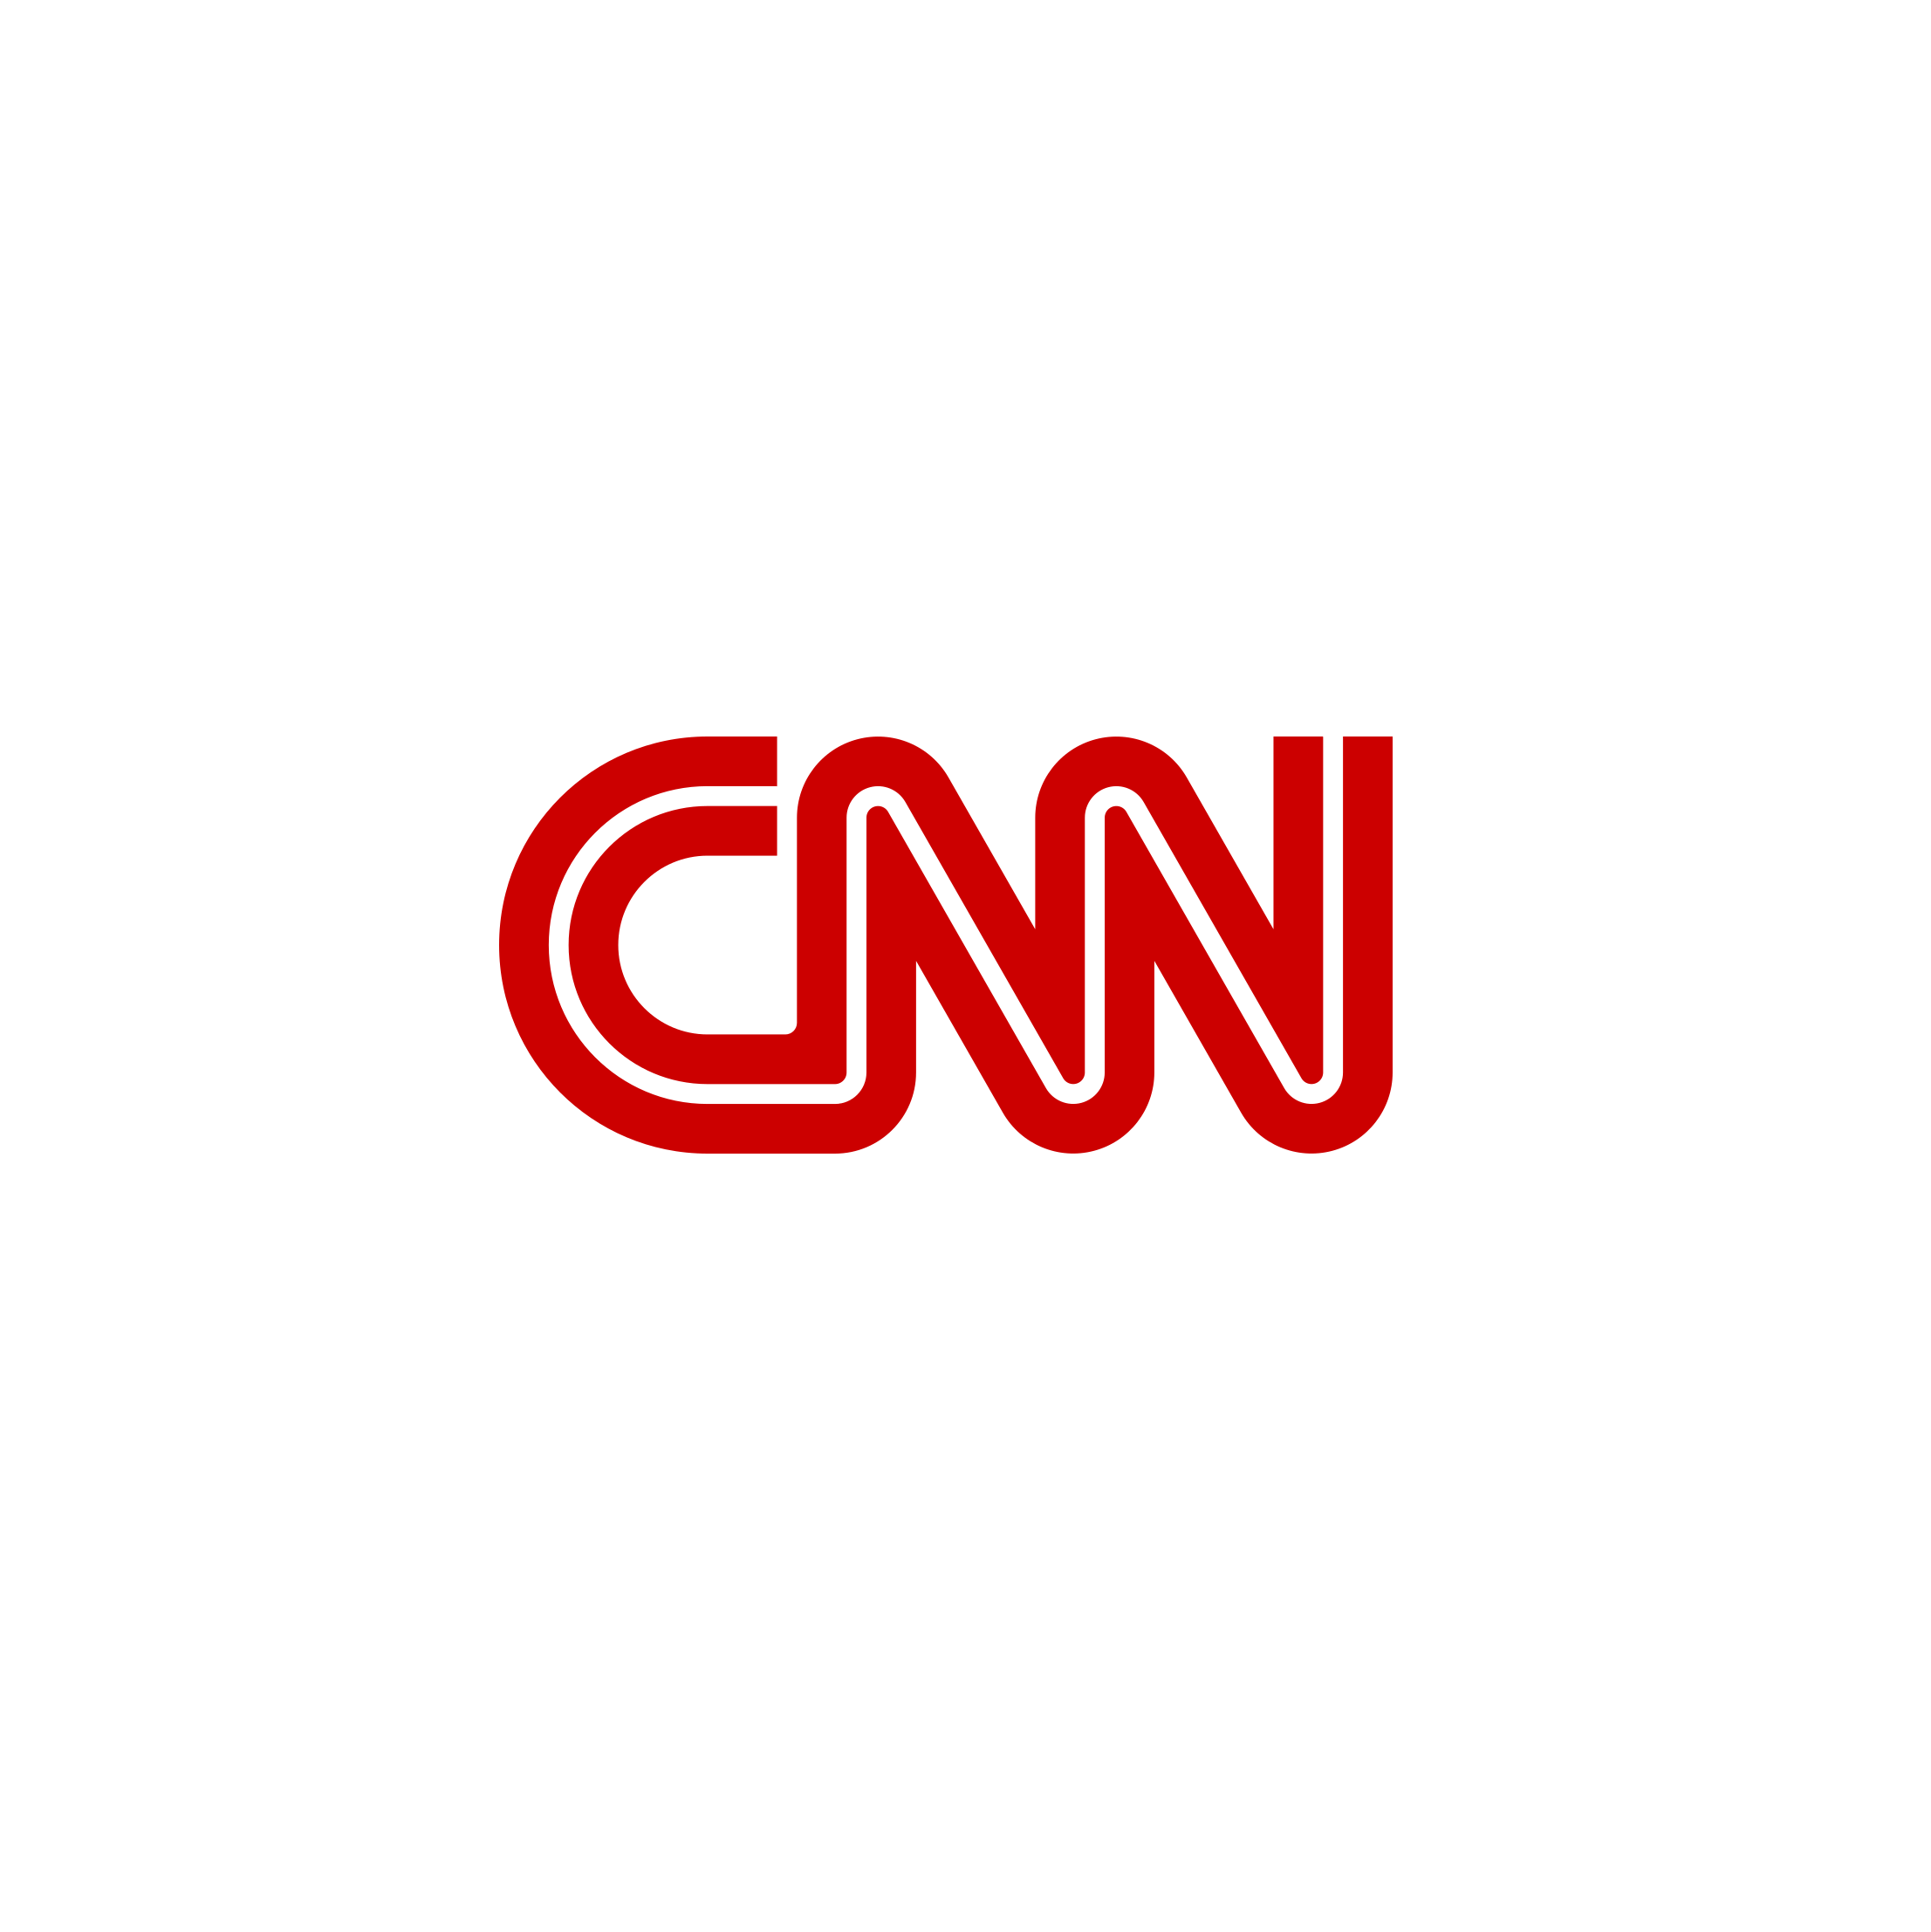 cnn logo.png